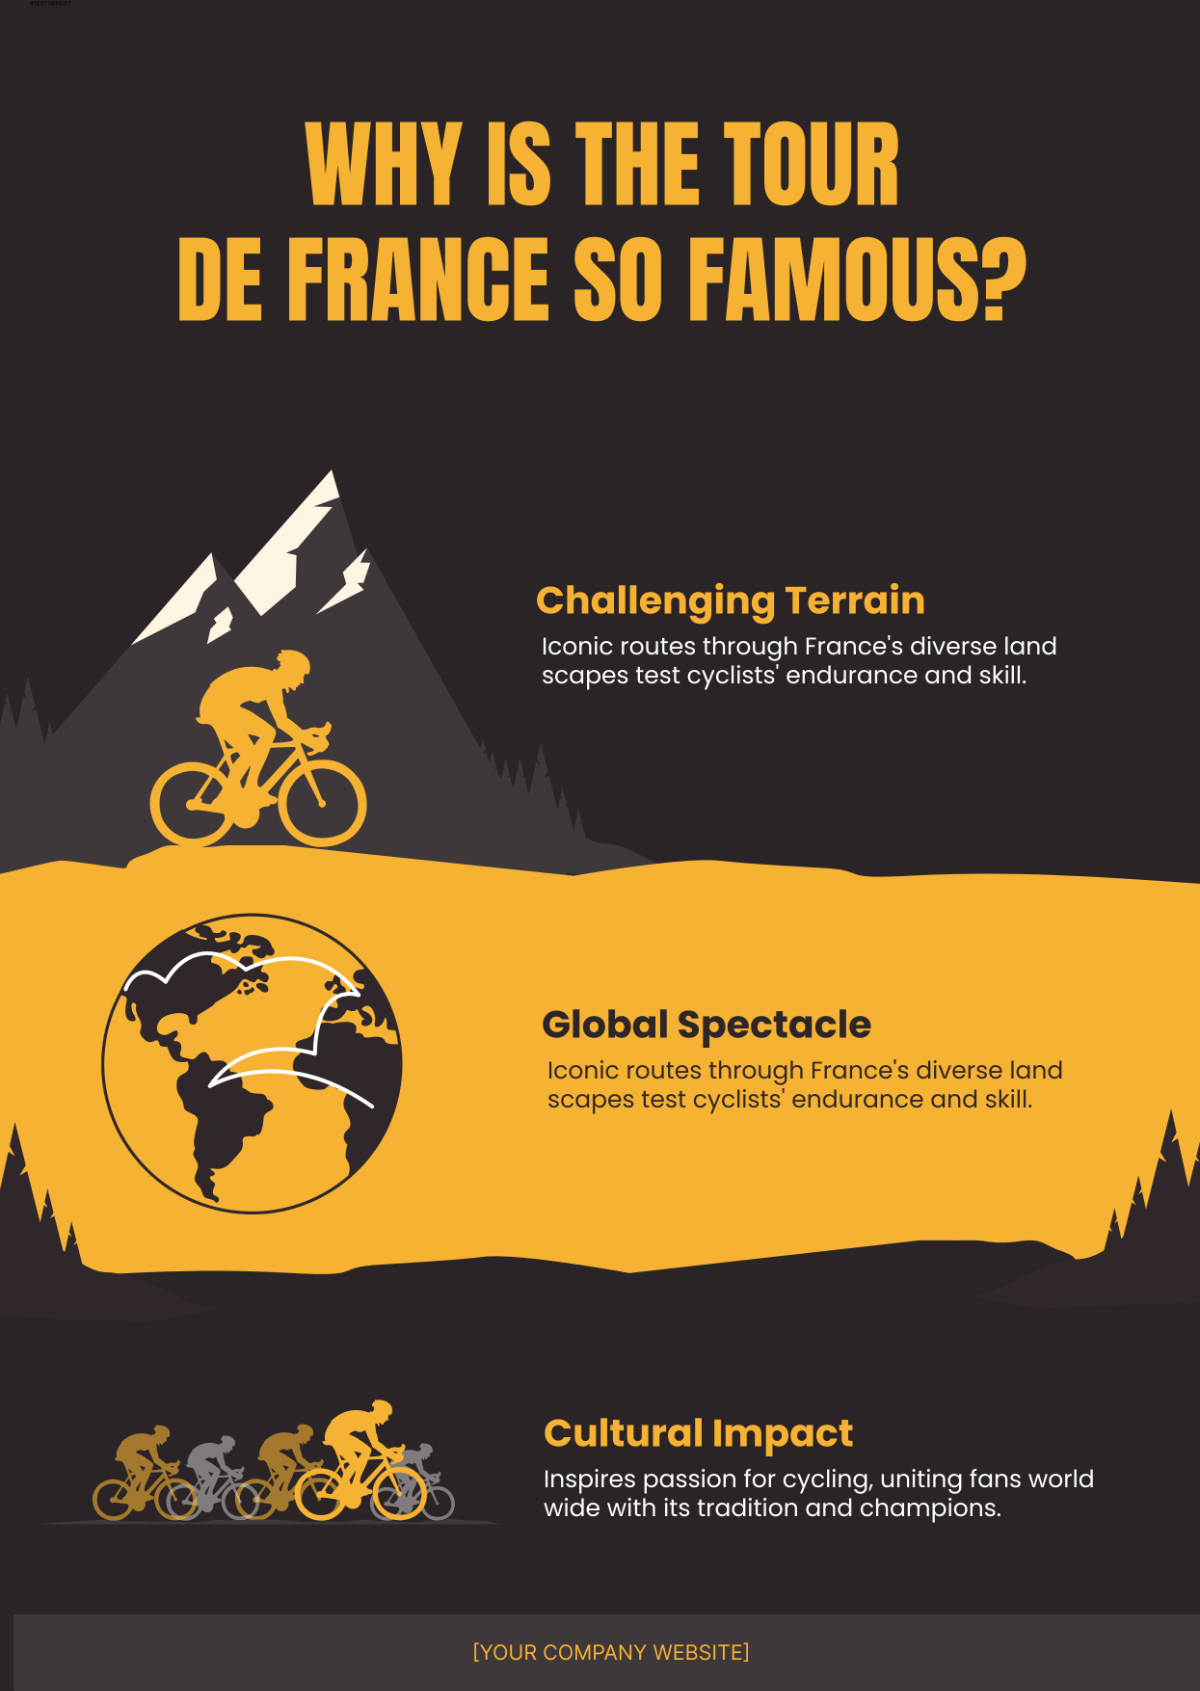 Why is the Tour de France so famous?